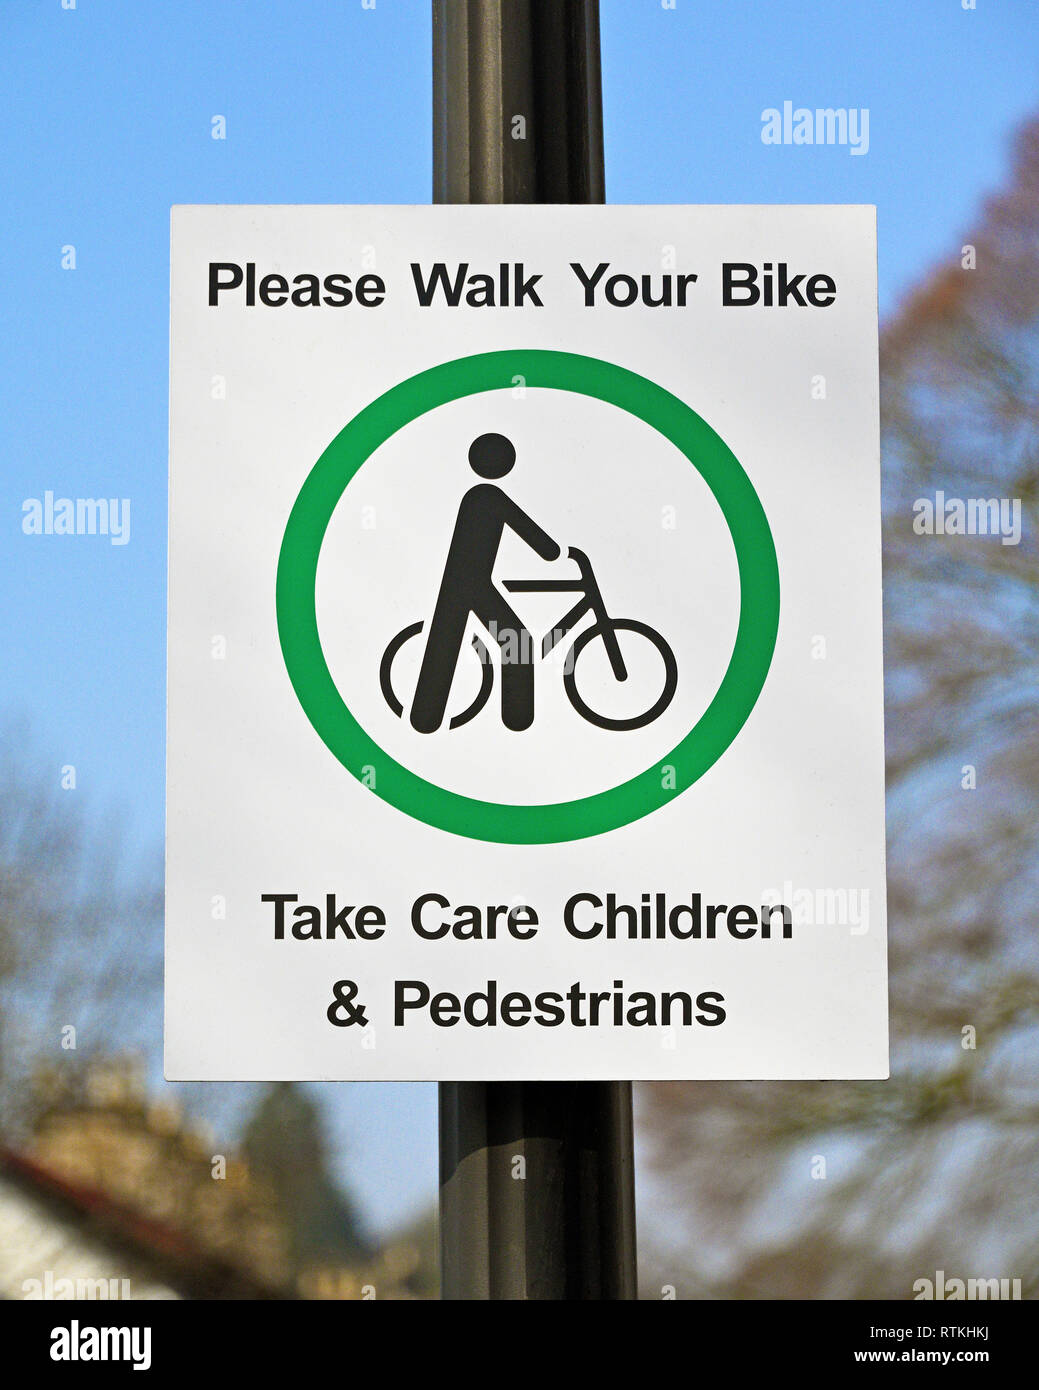 Sicherheit anmelden. "Bitte gehen Sie Ihr Fahrrad. Achten Sie darauf, Kinder und Fußgänger. K Dorf, Kendal, Cumbria, England, Vereinigtes Königreich, Europa. Stockfoto